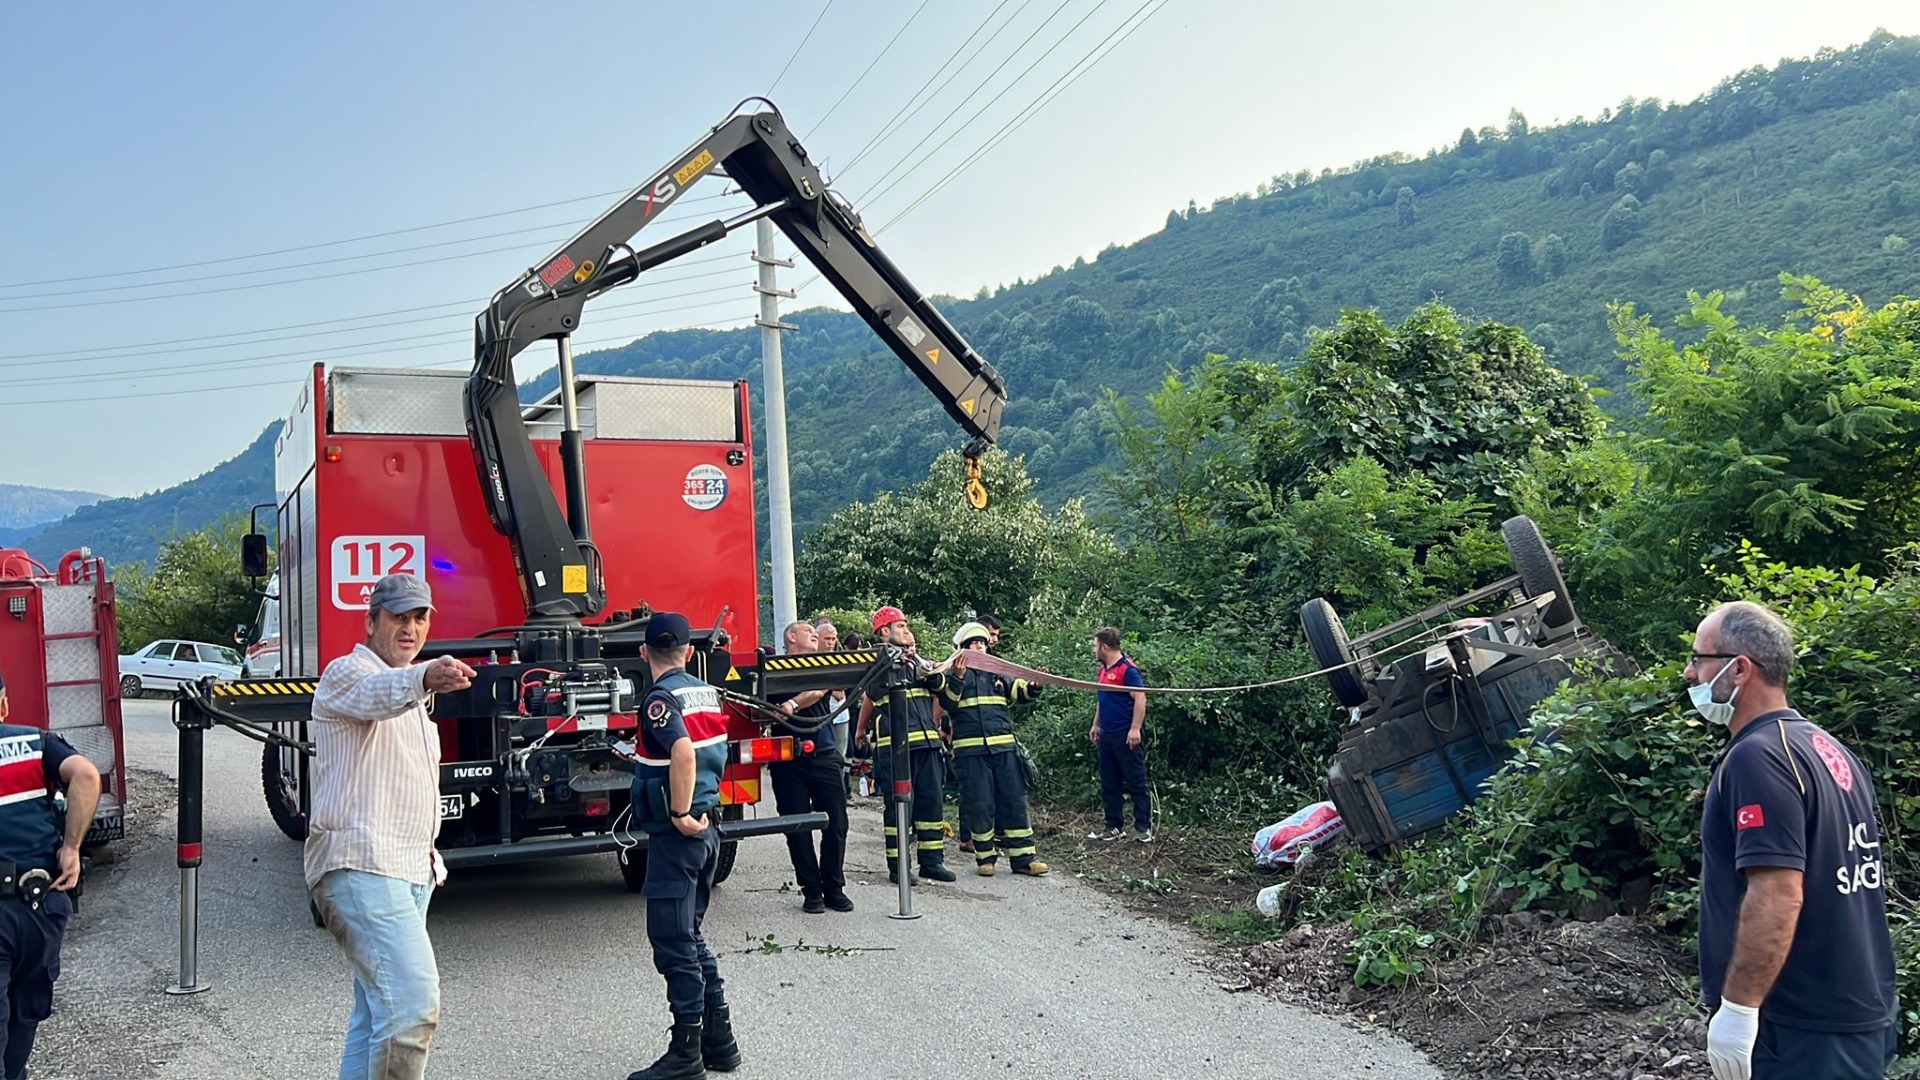 Fındık işçilerini taşıyan traktörün römorku devrildi. 1 ölü, 12 yaralı 